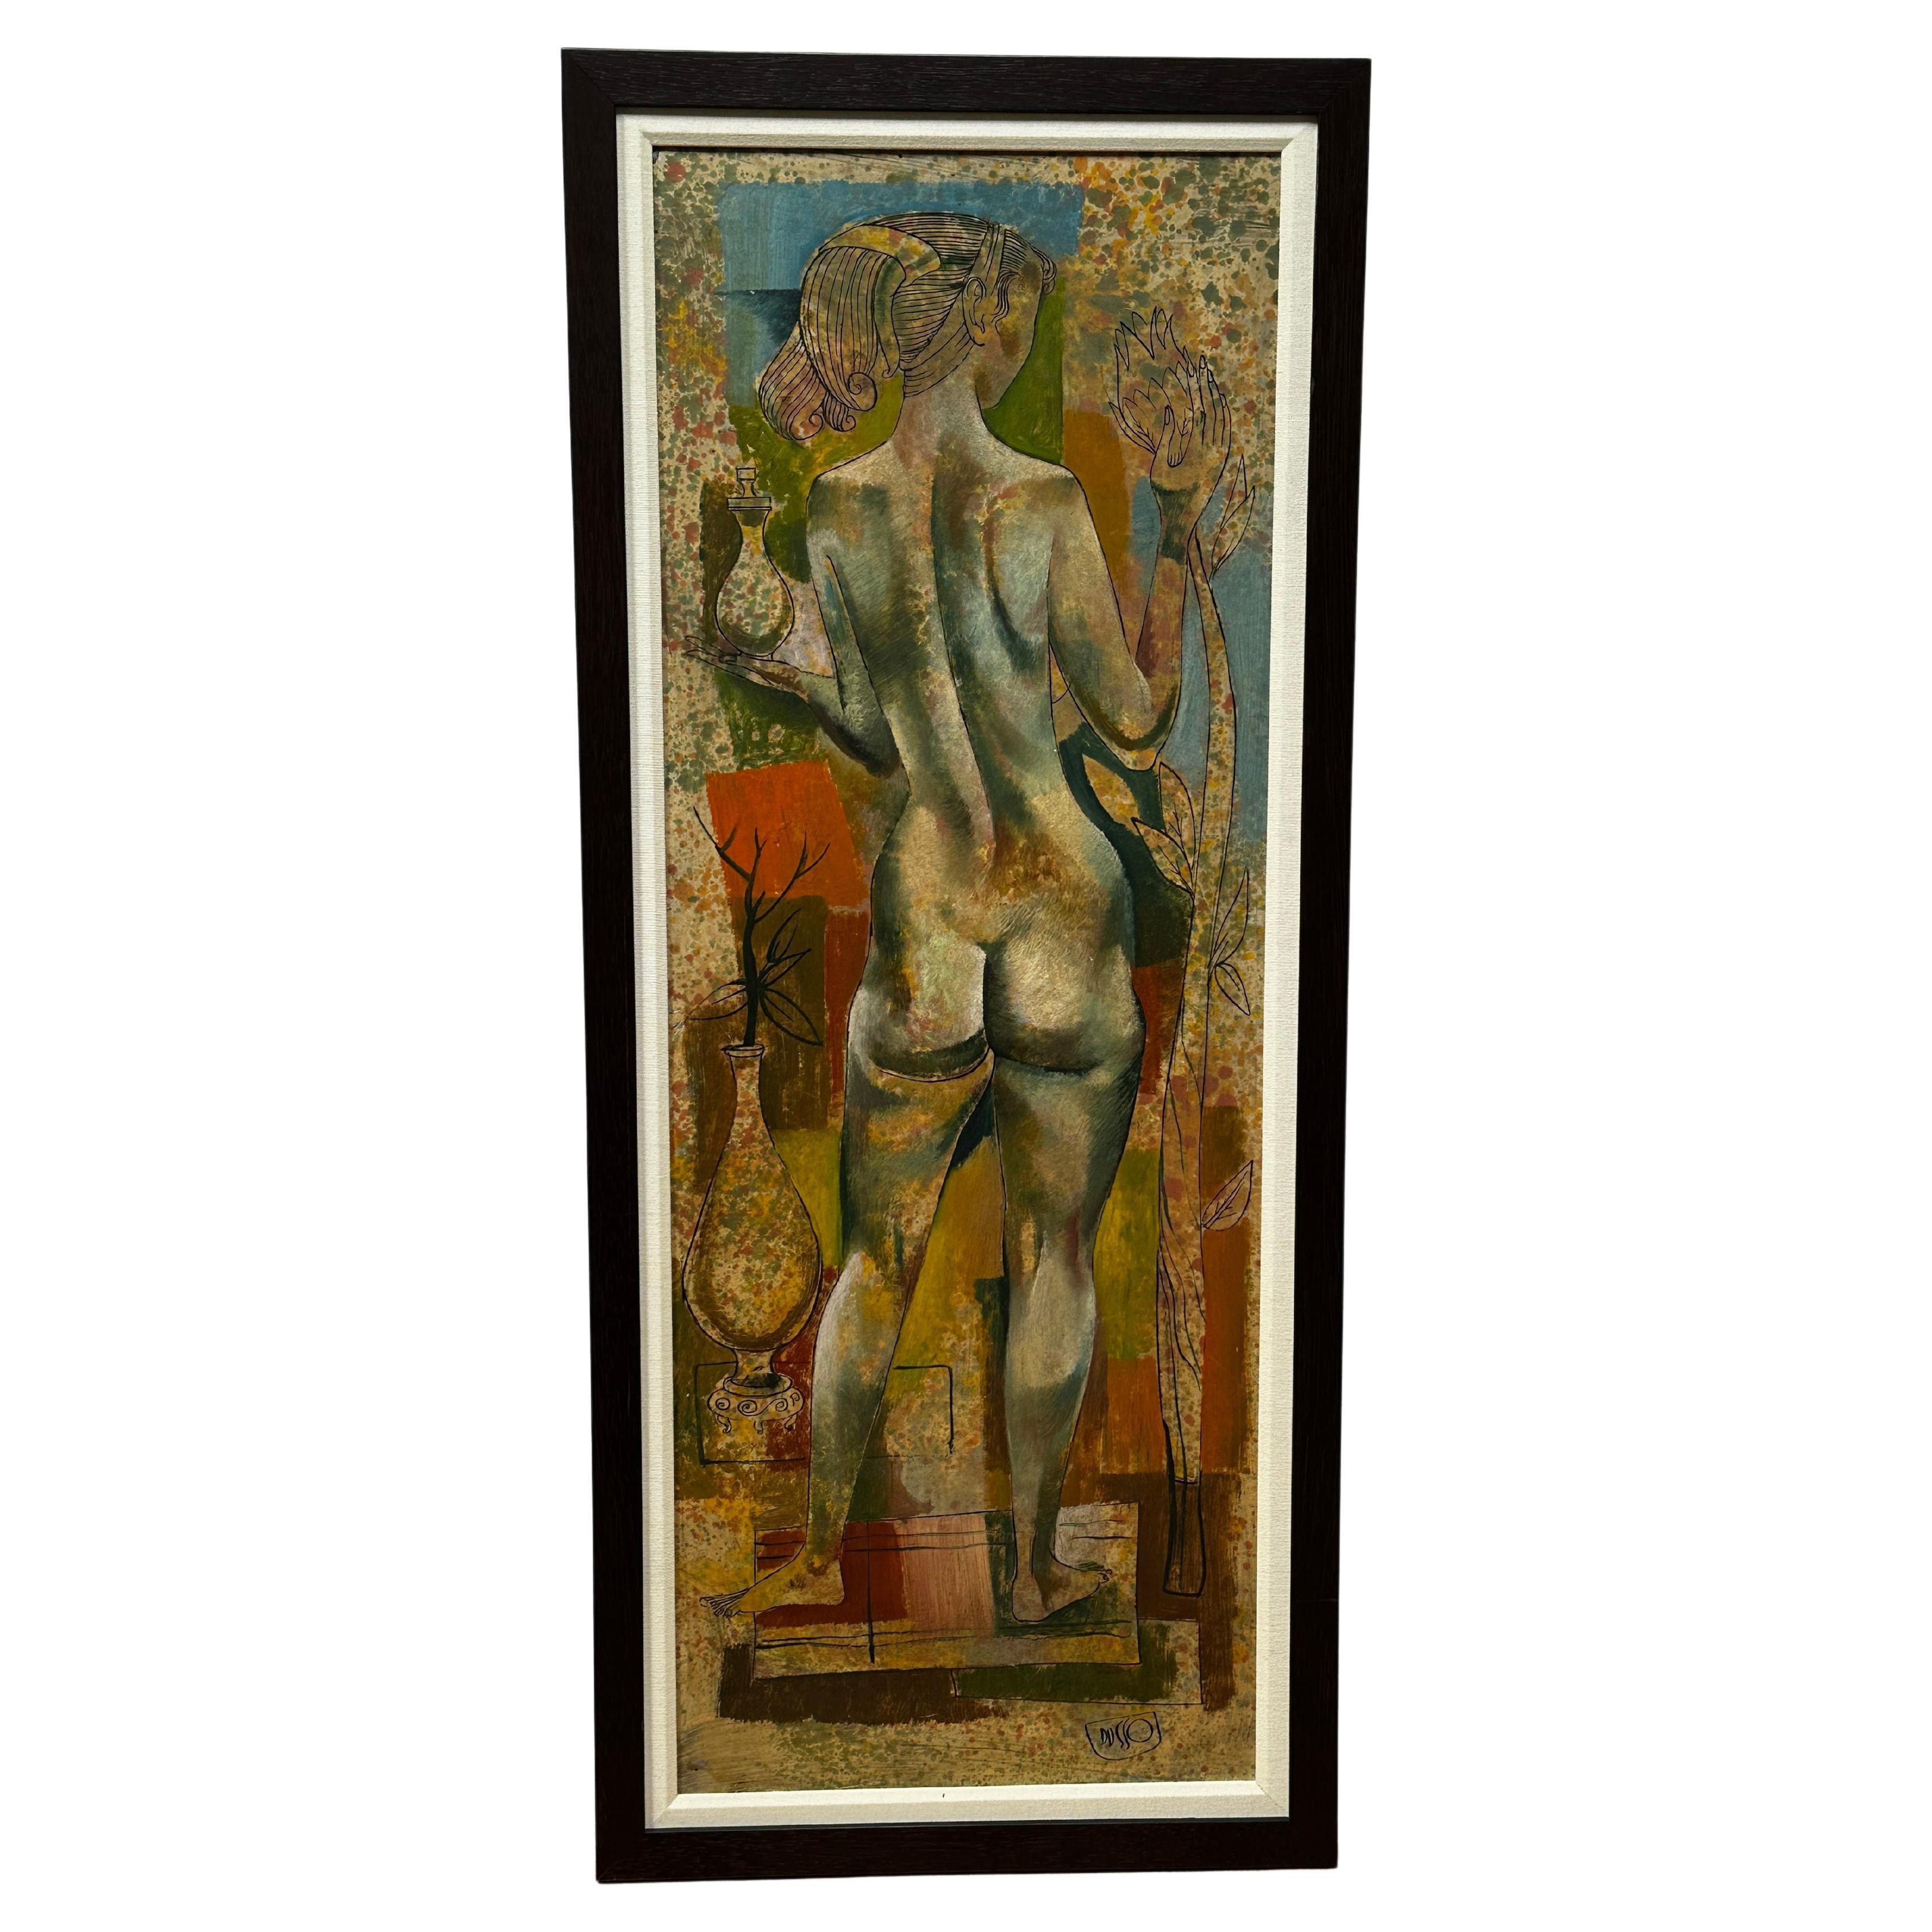 Cette délicate peinture à l'huile et à l'encre sur panneau de Dusso représente une belle et gracieuse femme vue de dos, dont la silhouette nue est mise en valeur par l'encadrement de ses cheveux. Elle tient un vase dans une main tout en touchant